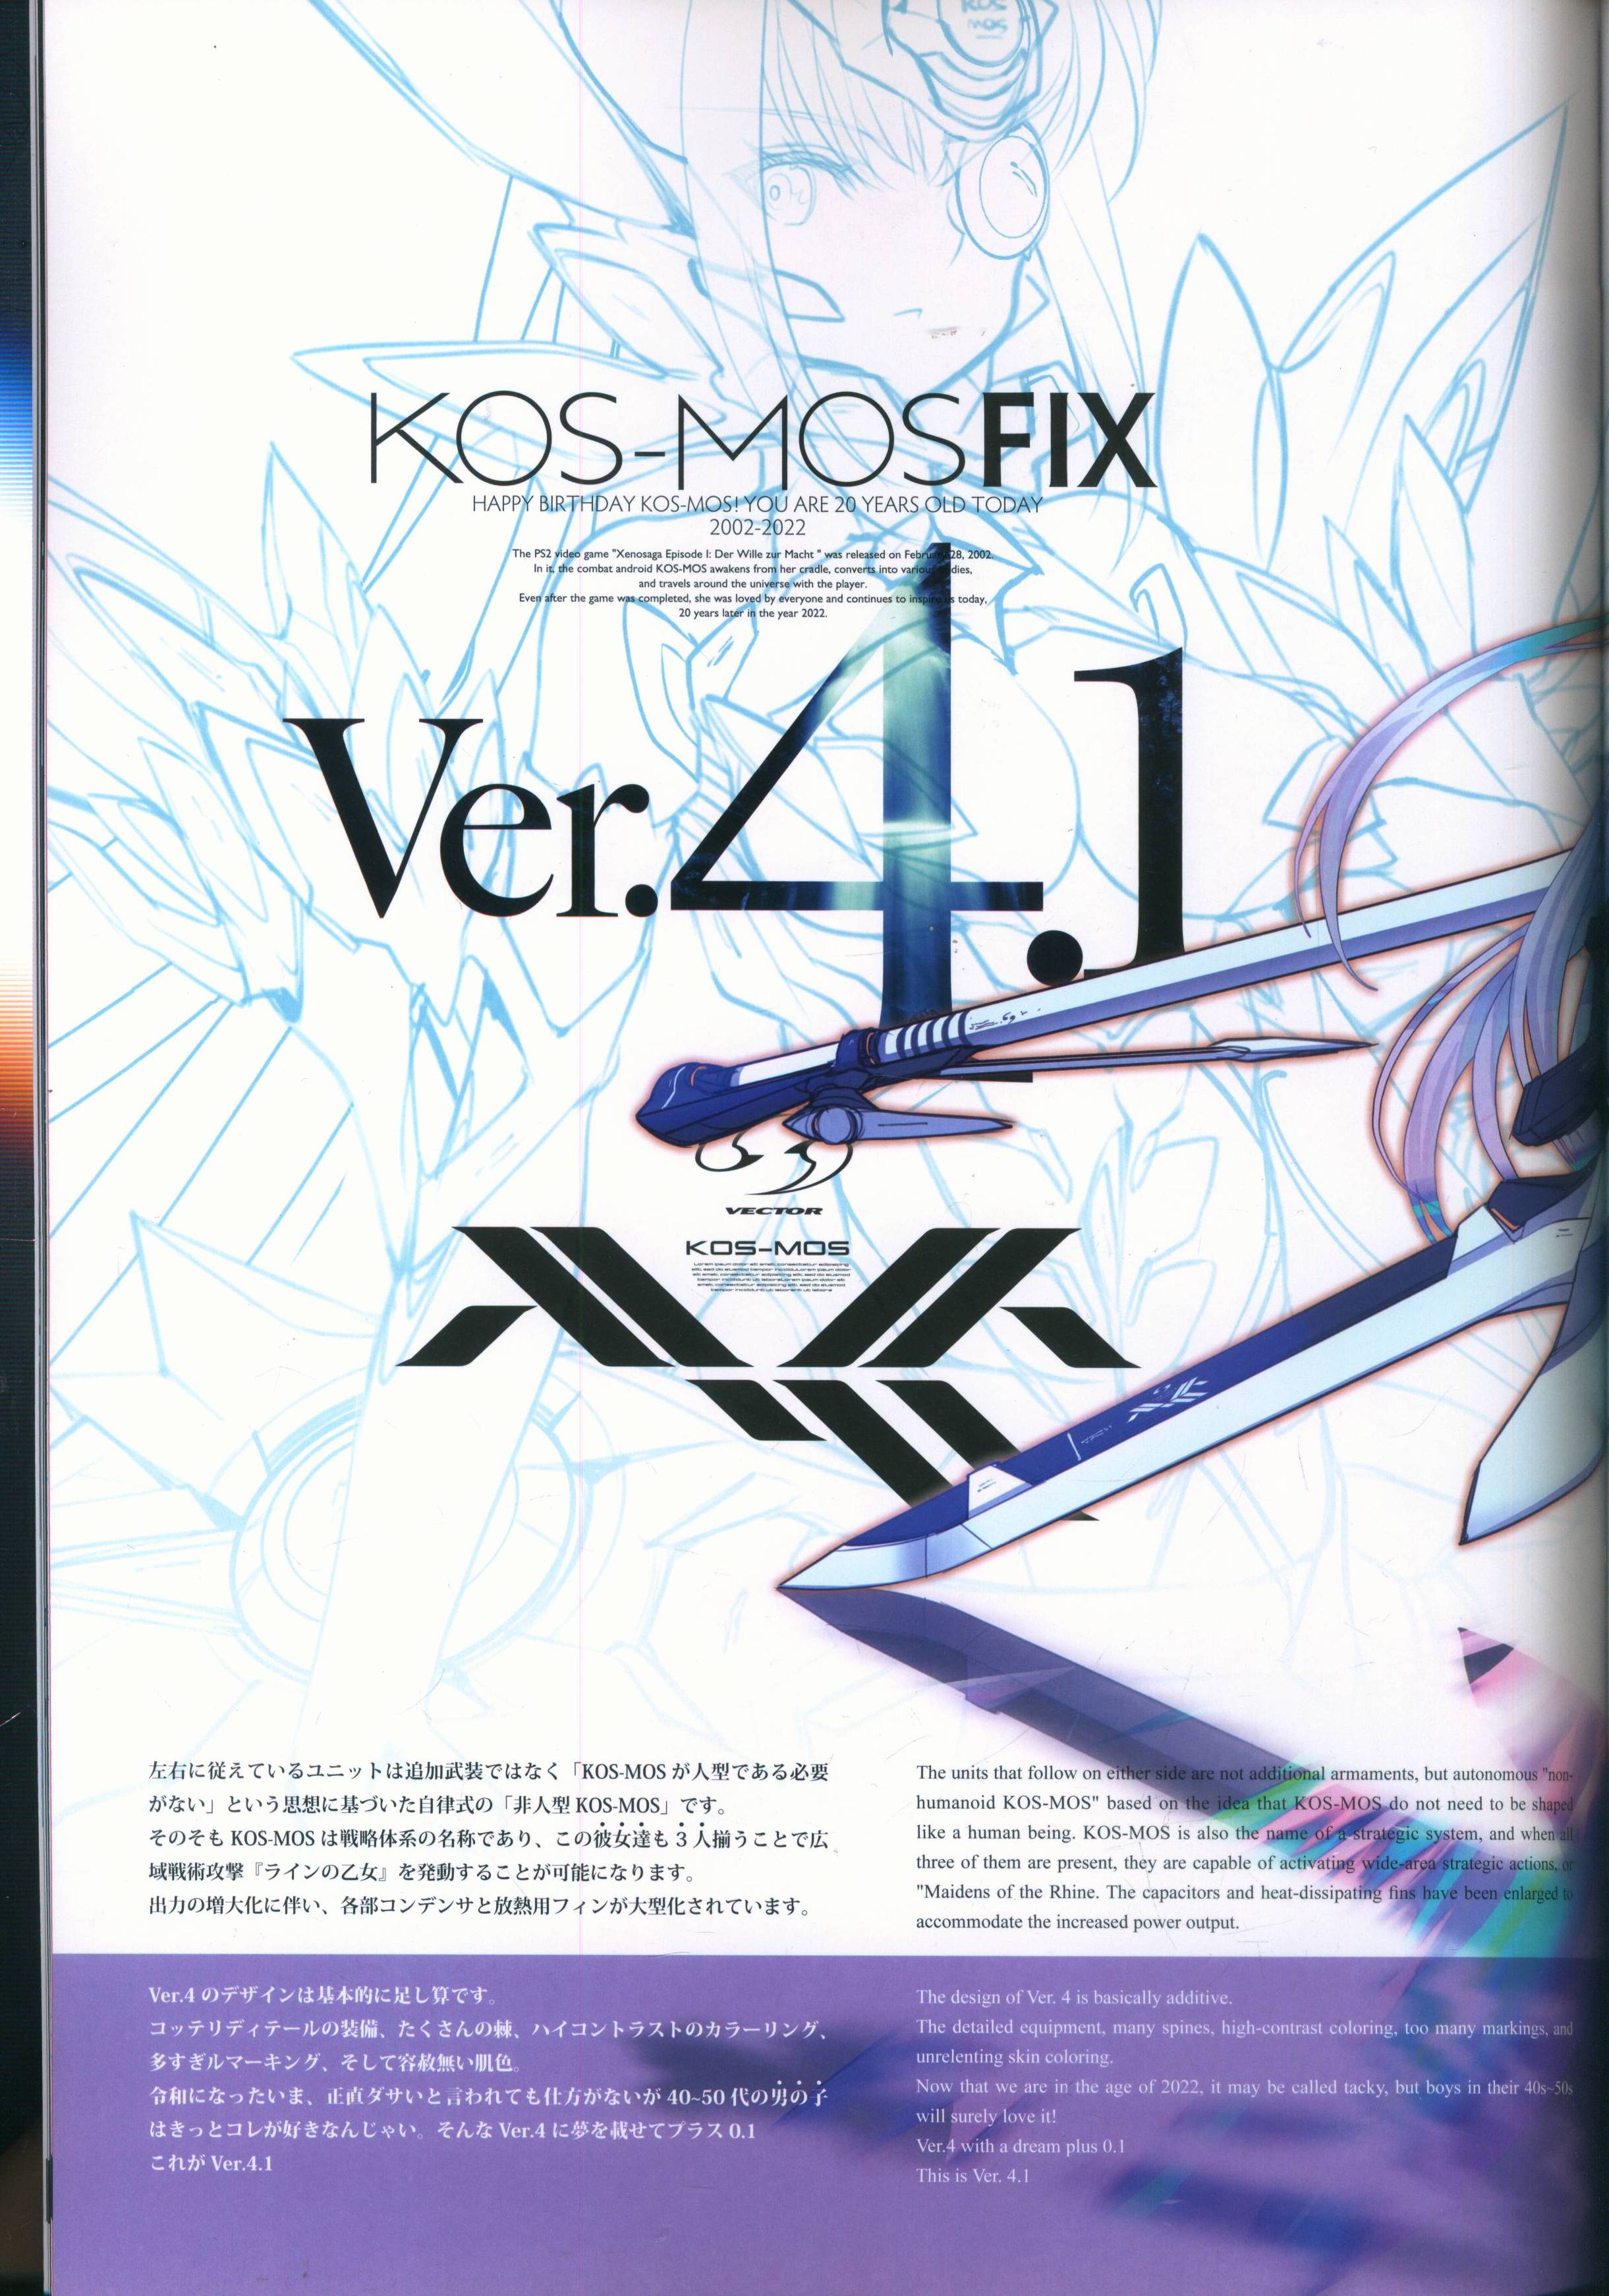 [Doujinshi (Self-Published Book)] KOS-MOS FIX (KOS-MOS 20th Anniversary)  (Xenosaga Series)